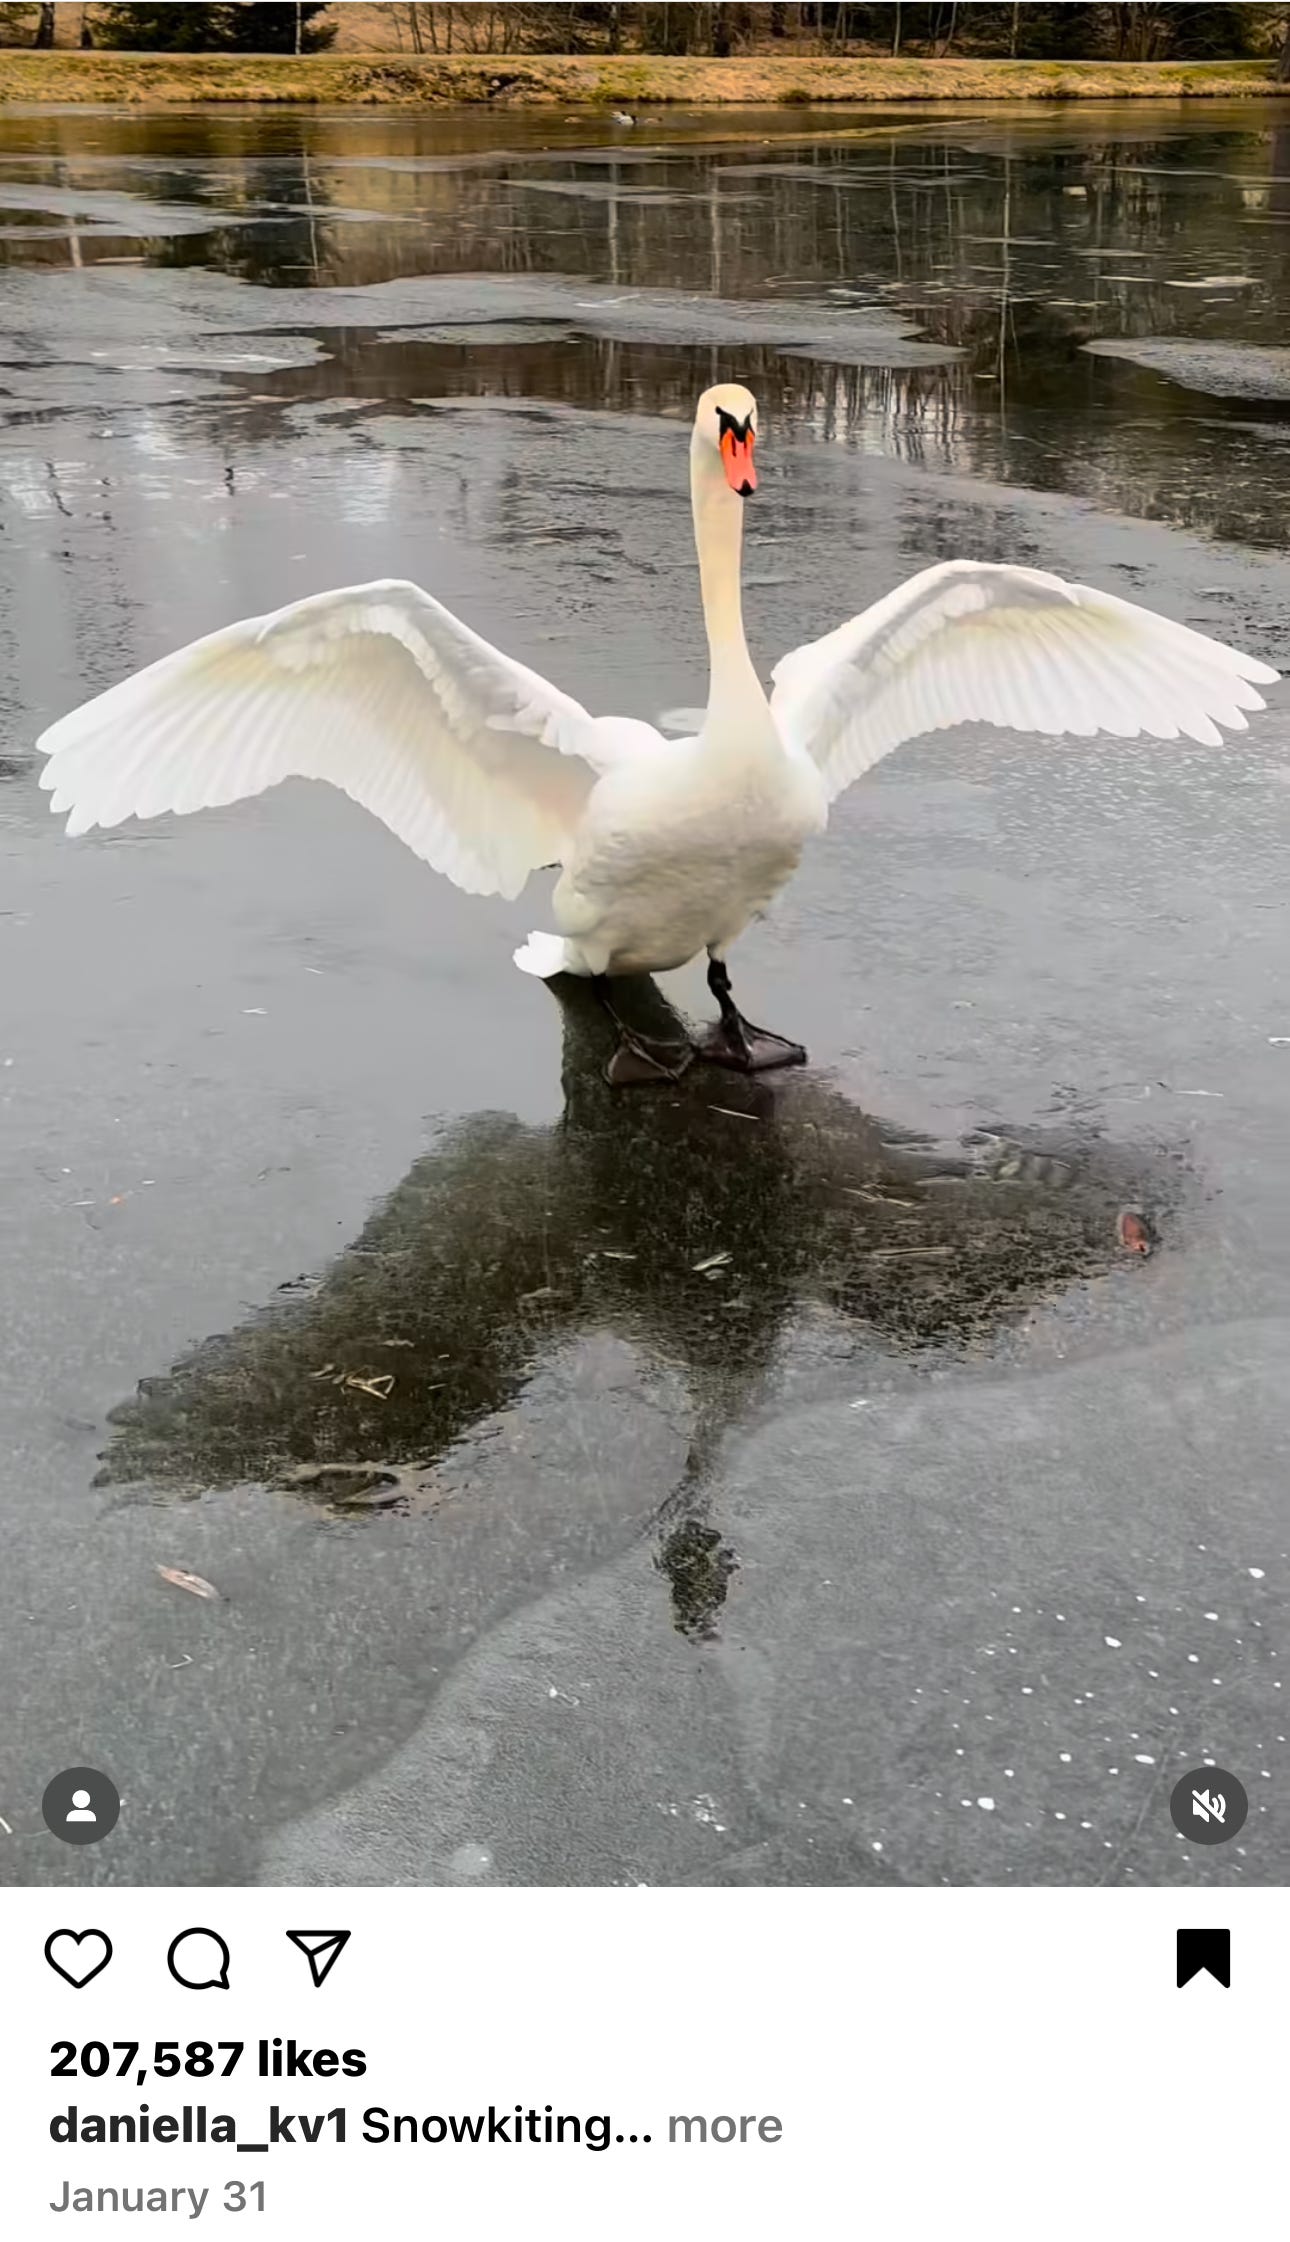 A swan gliding across a frozen lake, wings outspread